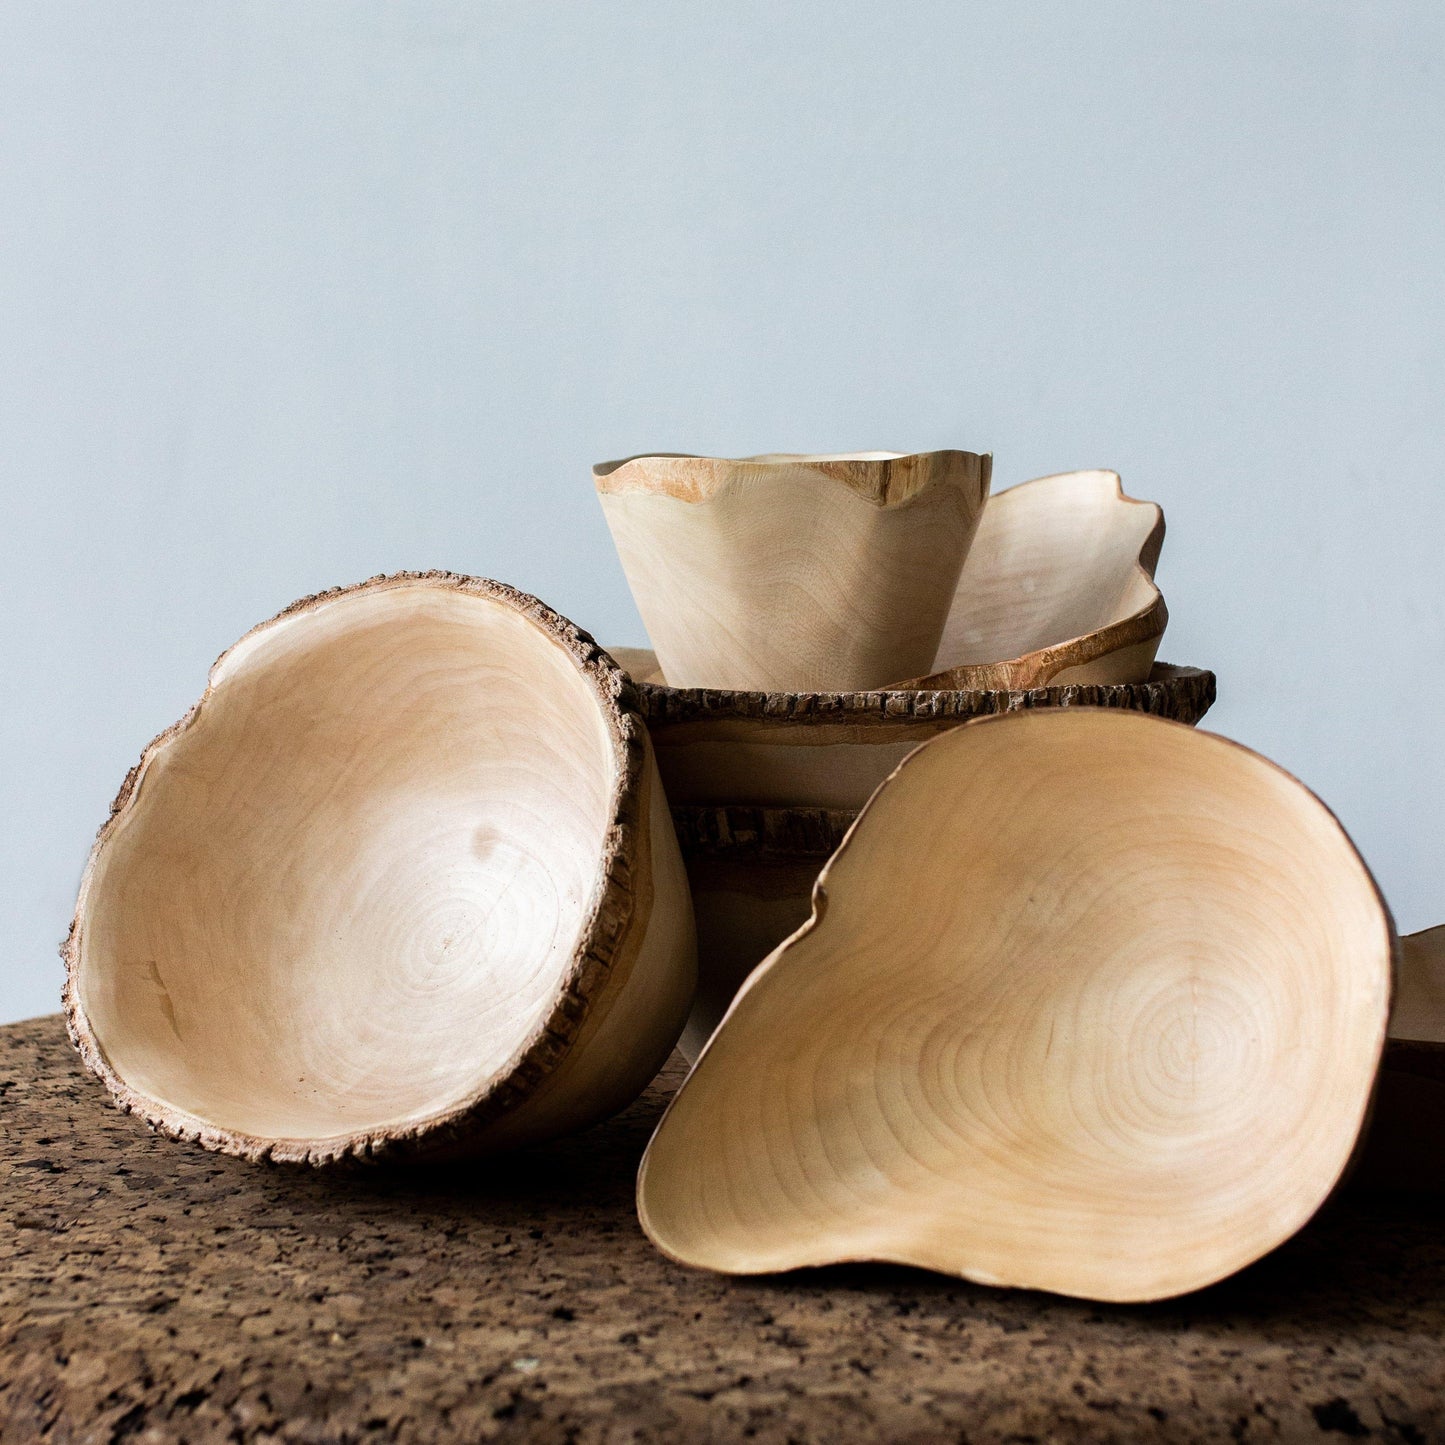 Organic Jacaranda Wood Bowls